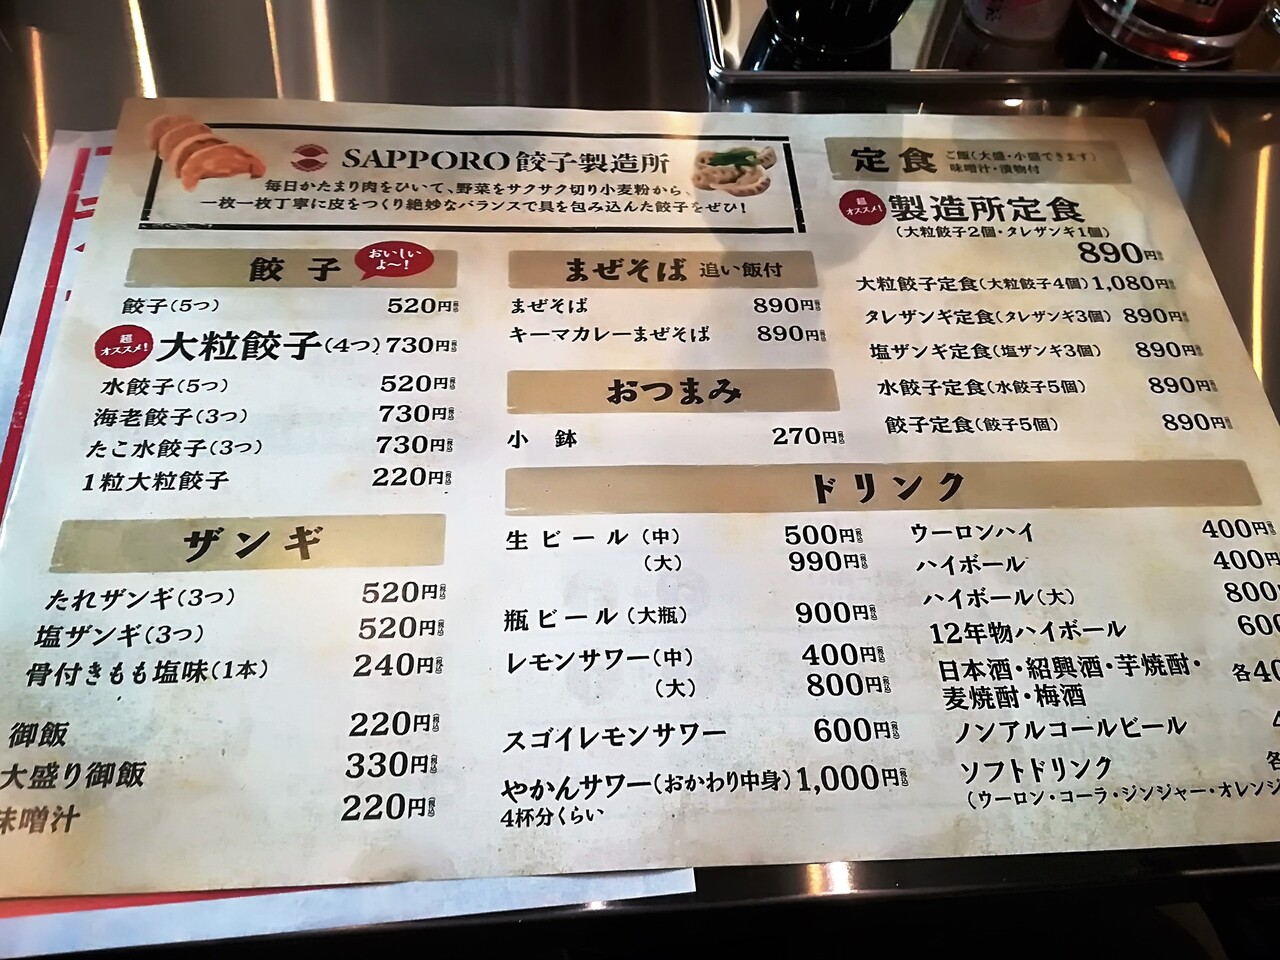 本日オープン 狸小路5丁目 Sapporo餃子製造所 狸小路店さんにてランチ限定 餃子ザンギ定食 Rubis Life